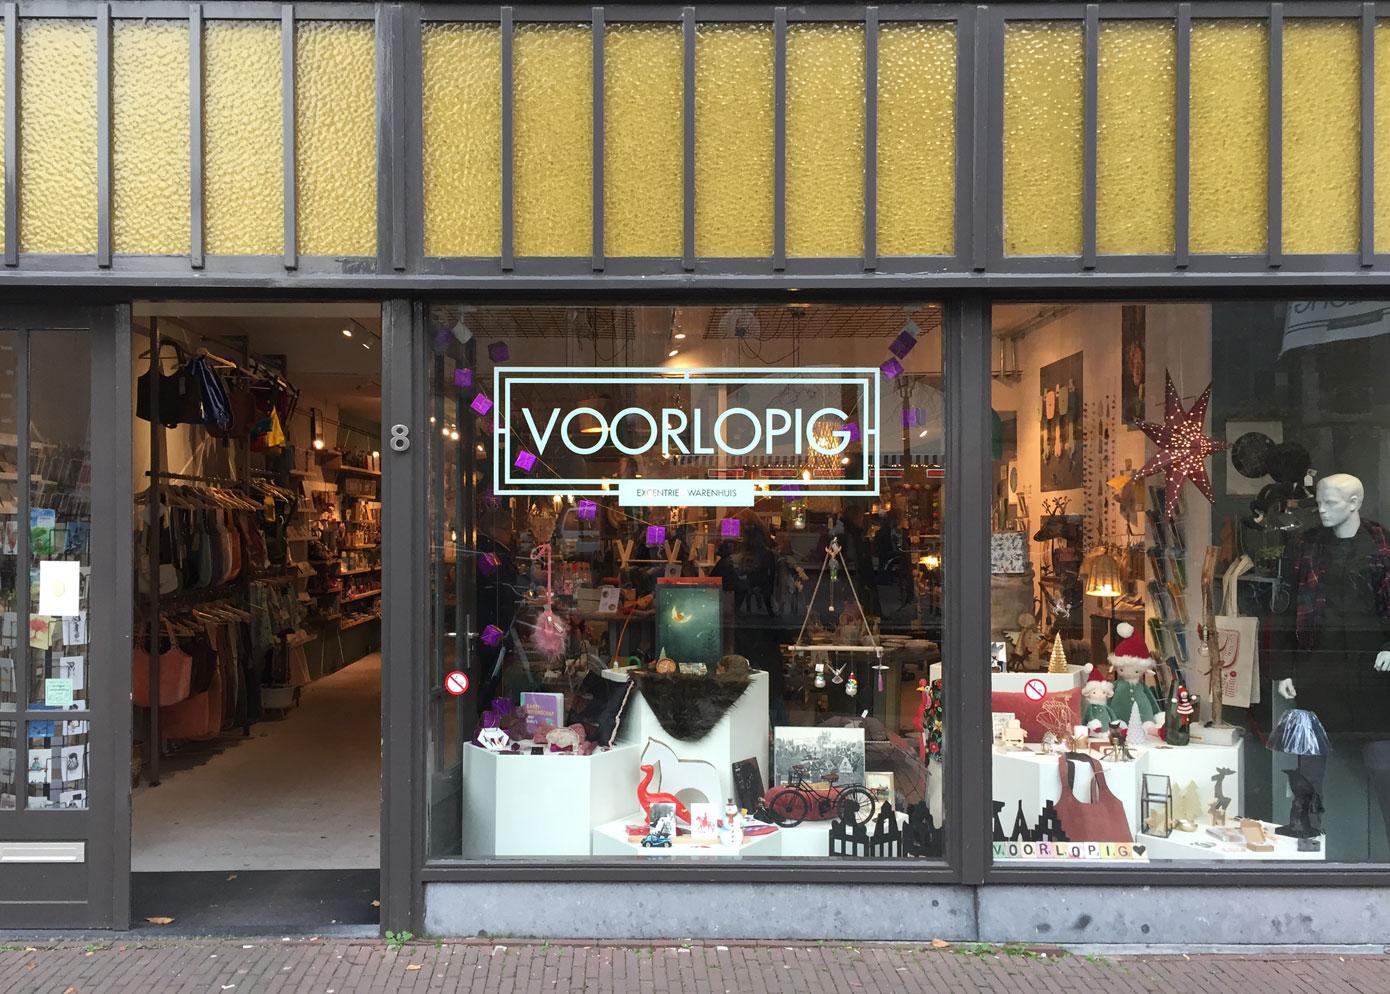 Foto Voorlopig in Delft, Winkelen, Kado's & geschenken, Wonen & koken - #1